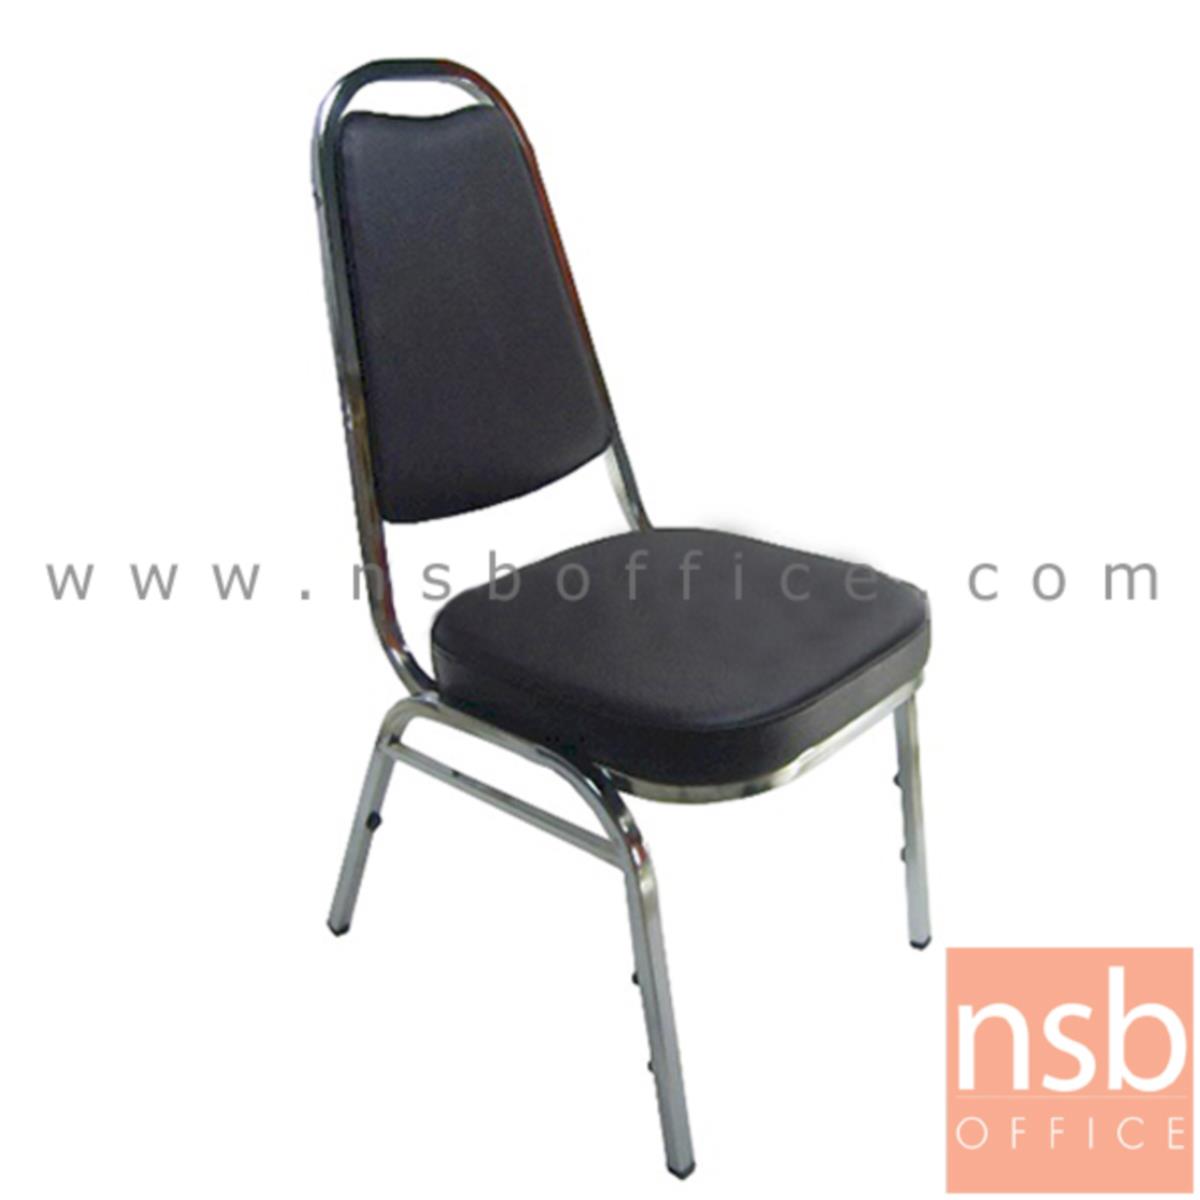 B08A060:เก้าอี้อเนกประสงค์จัดเลี้ยง  ขนาด 90H cm. มีคาดเอ ขาเหล็ก 